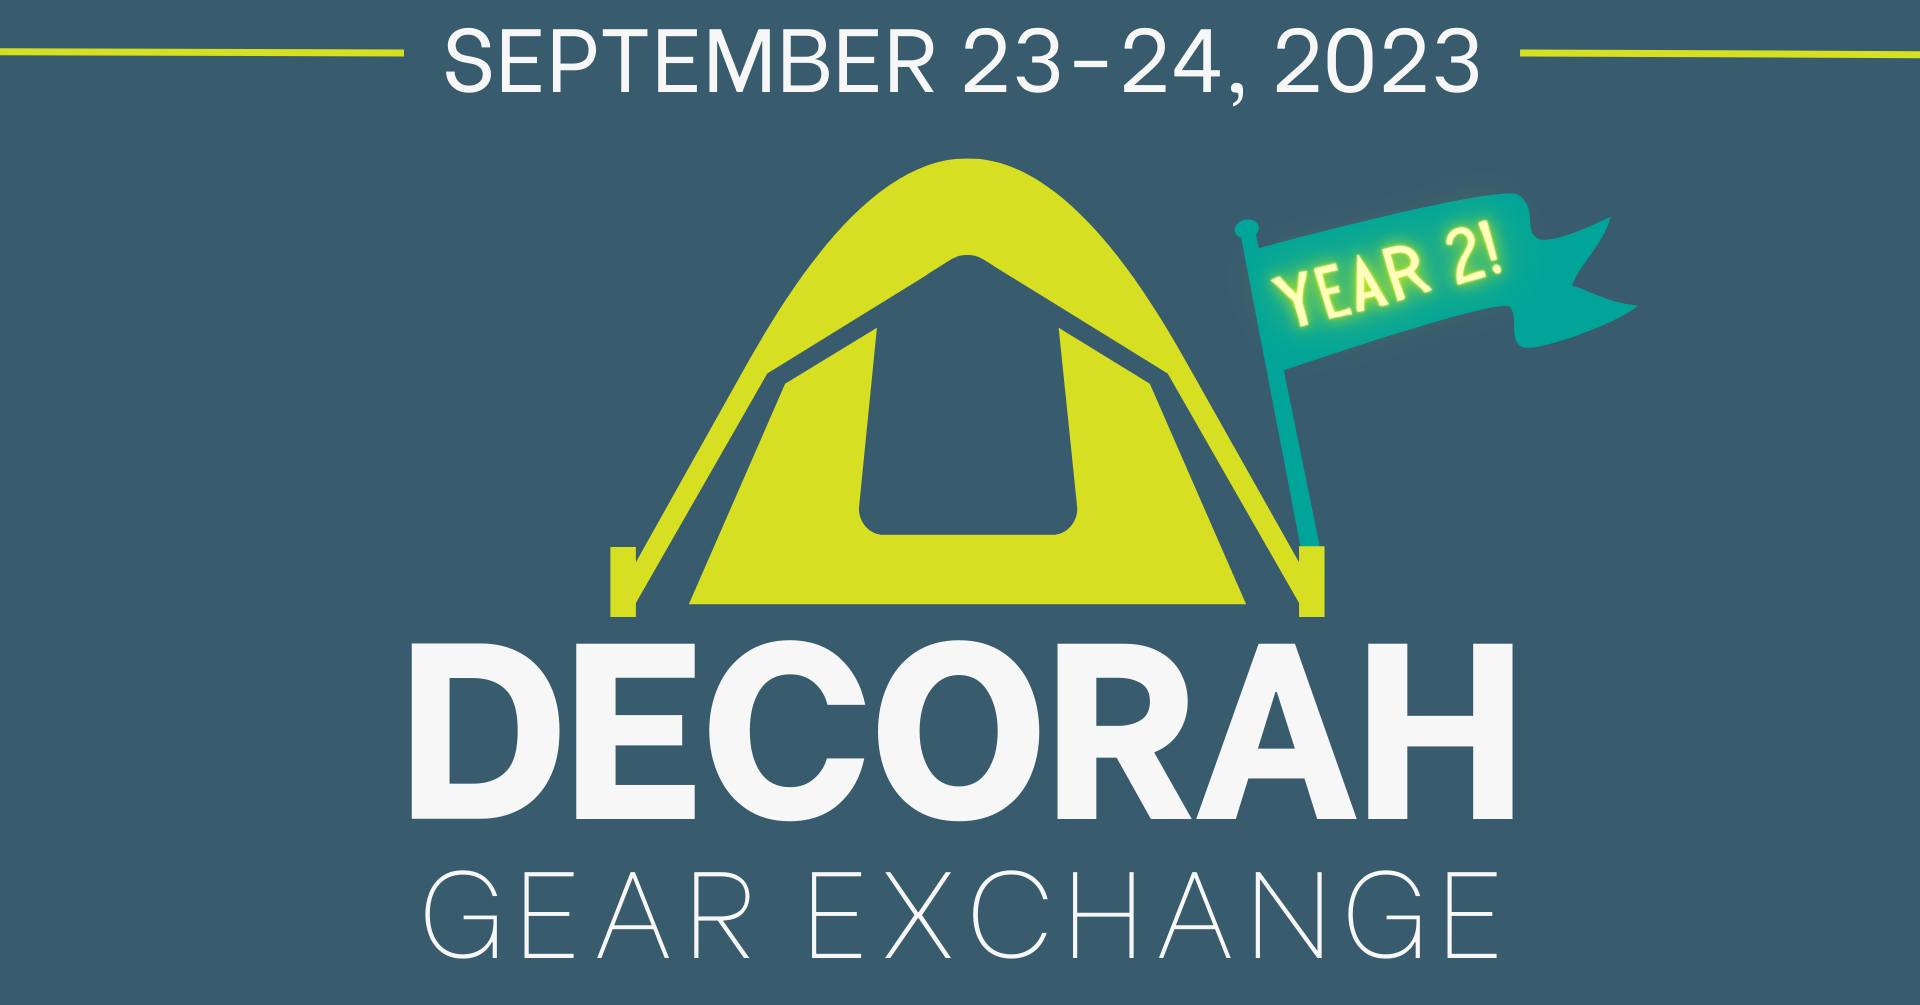 Decorah Gear Exchange - Year 2! thumbnail